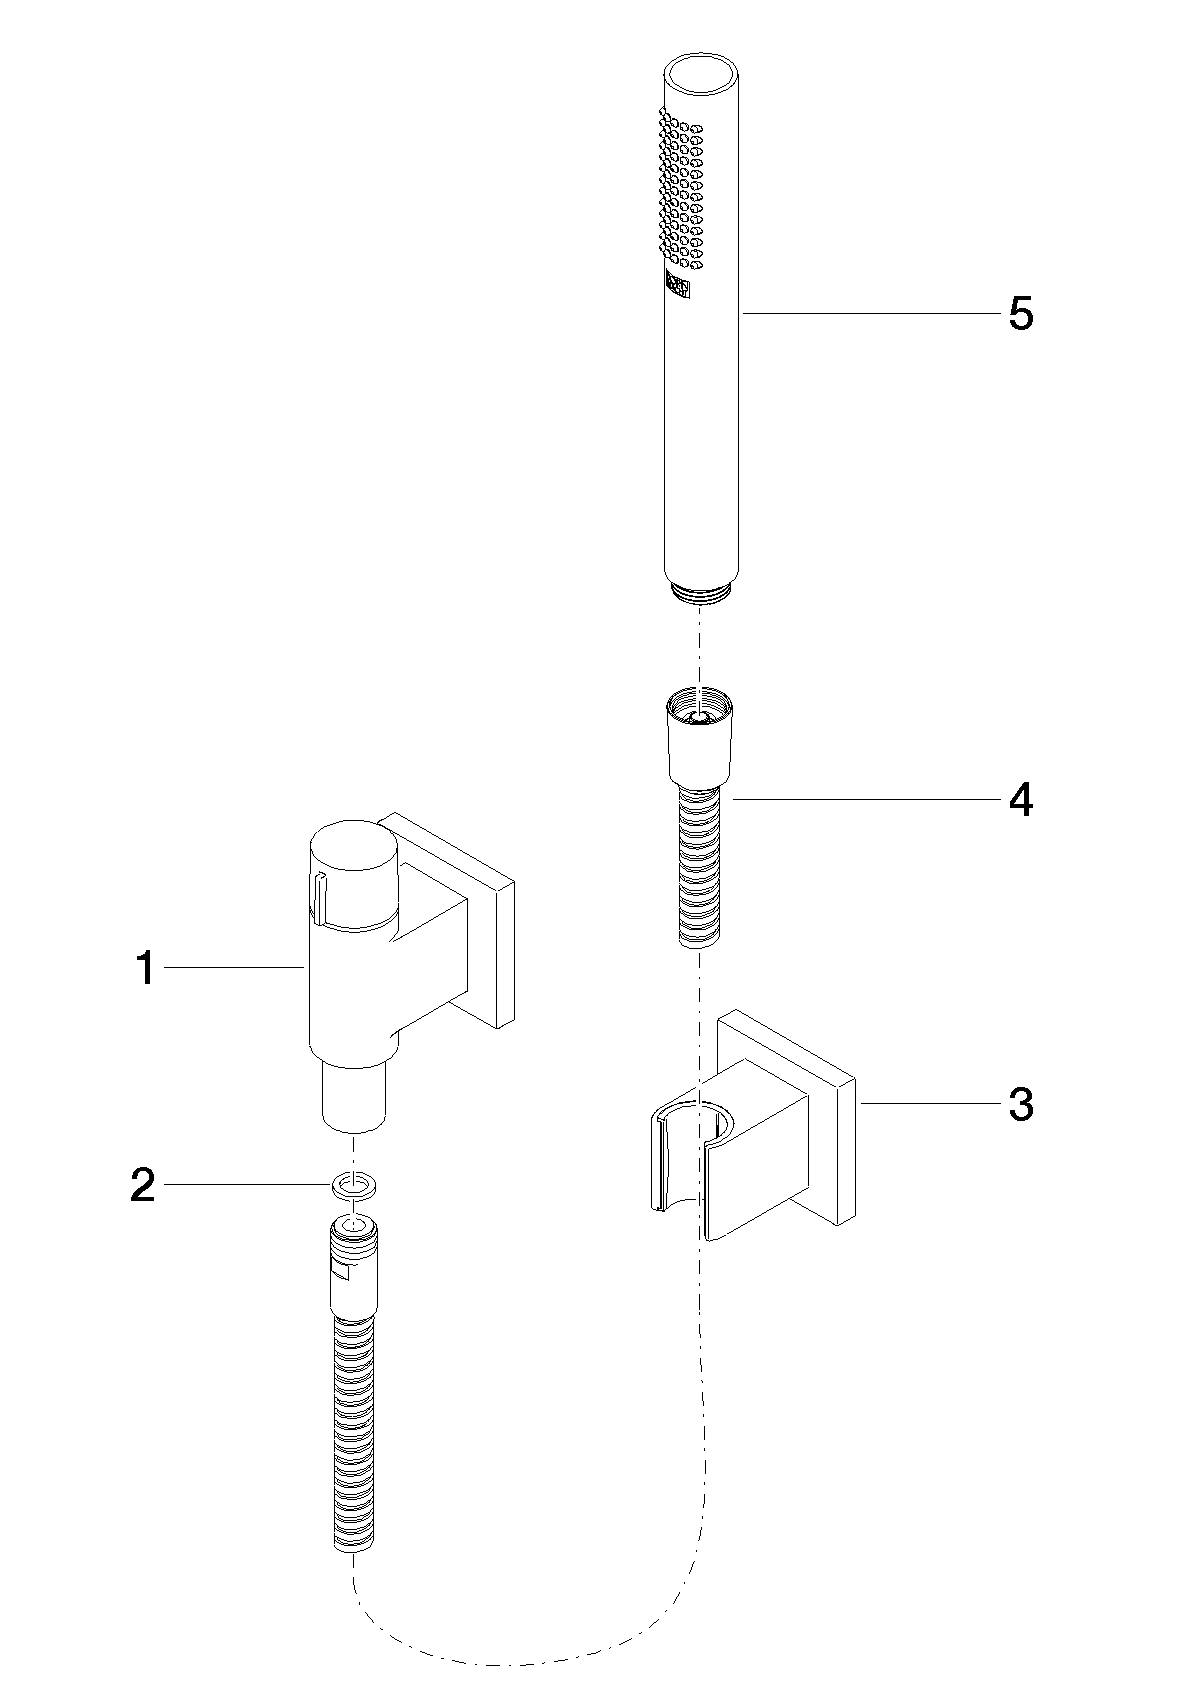 Obrázek DORNBRACHT Sprchová souprava s jednotlivými rozetami s regulací průtoku - chrom #27809980-00